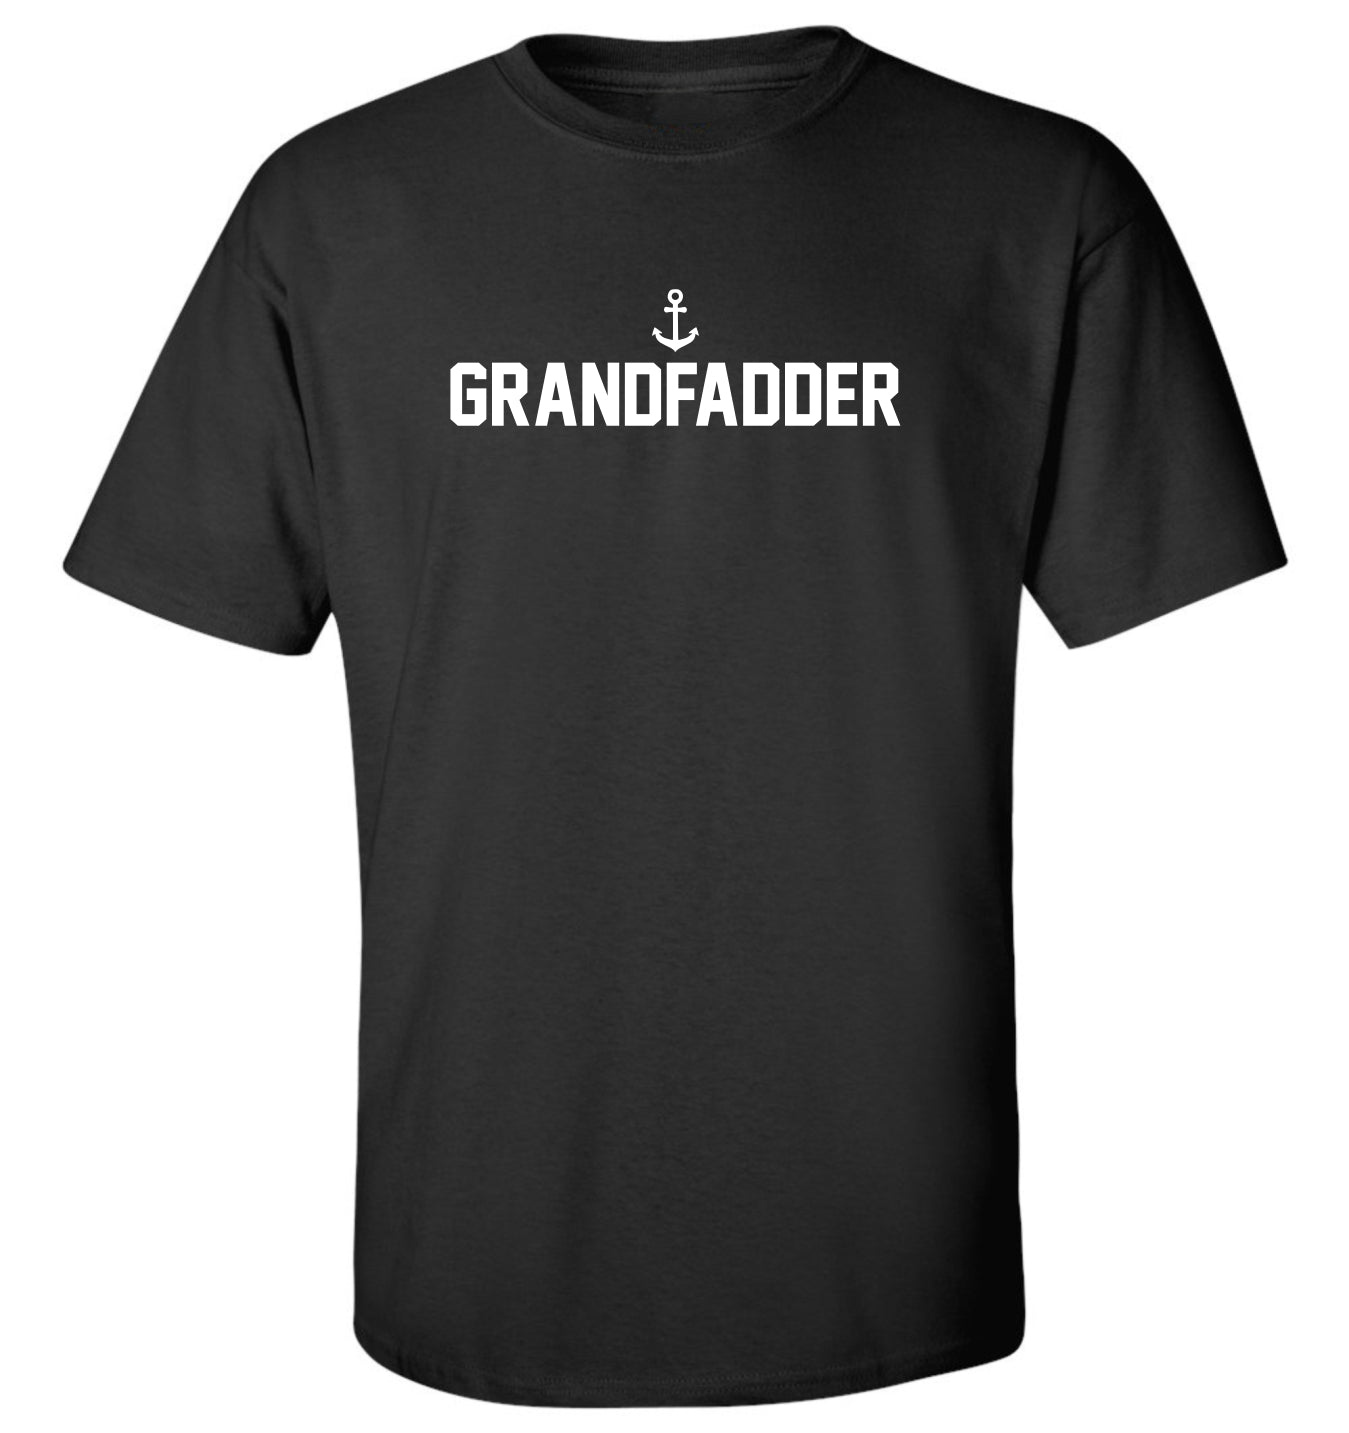 "Grandfadder" Unisex T-Shirt